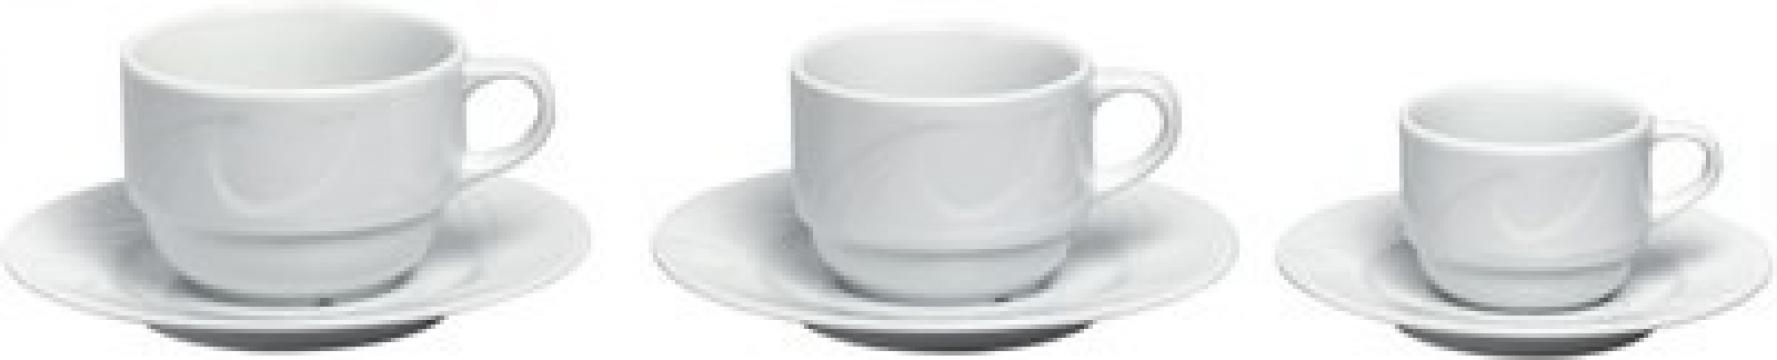 Ceasca cappuccino 230 ml , portelan, gama Karizma de la Clever Services SRL